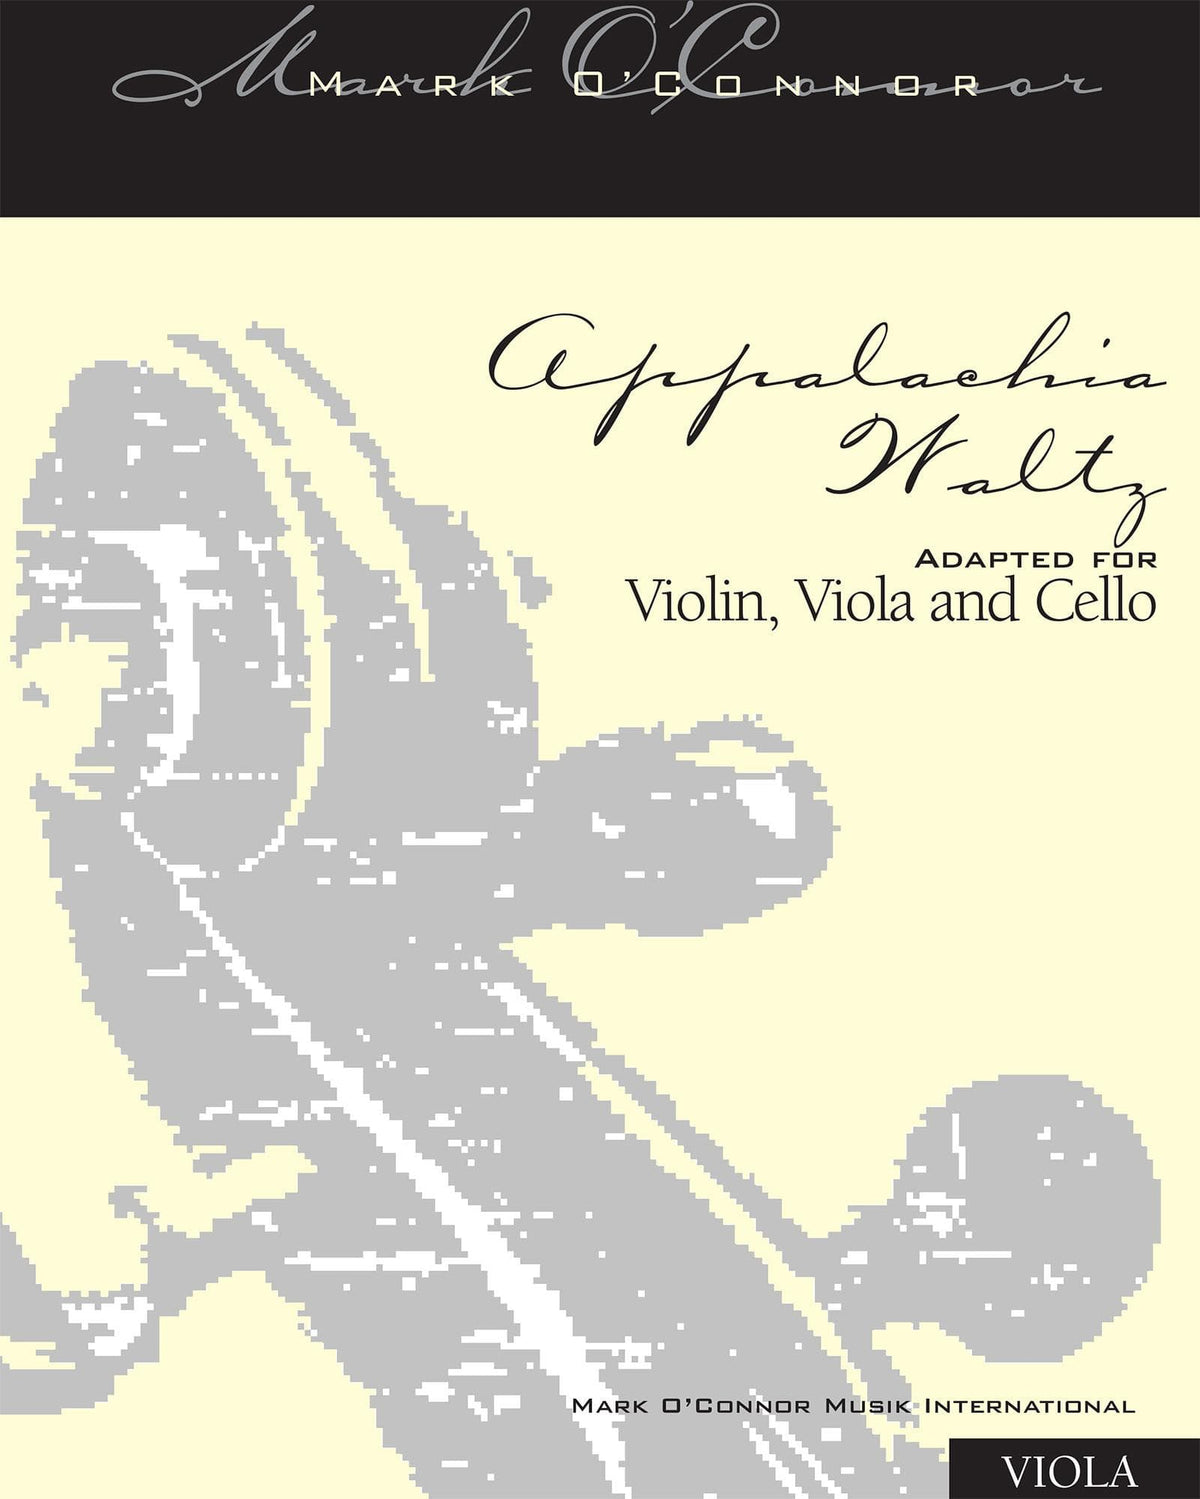 O'Connor, Mark - Appalachia Waltz for Violin, Viola, and Cello - Viola - Digital Download